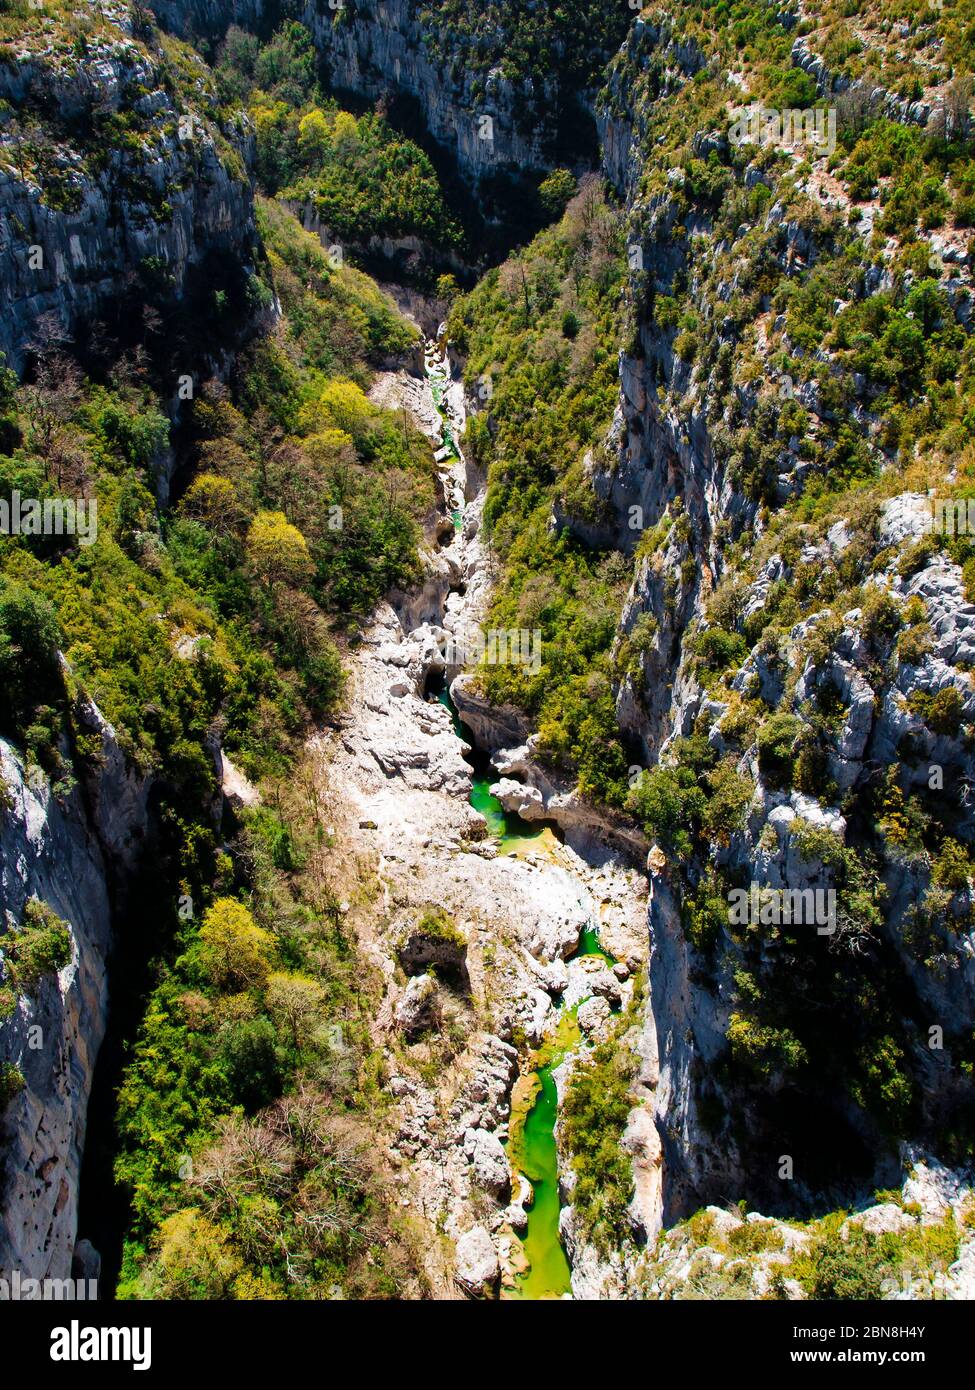 La gorge du Verdon (Gorges du Verdon), un canyon fluvial de la Côte d'Azur, Provence, France Banque D'Images